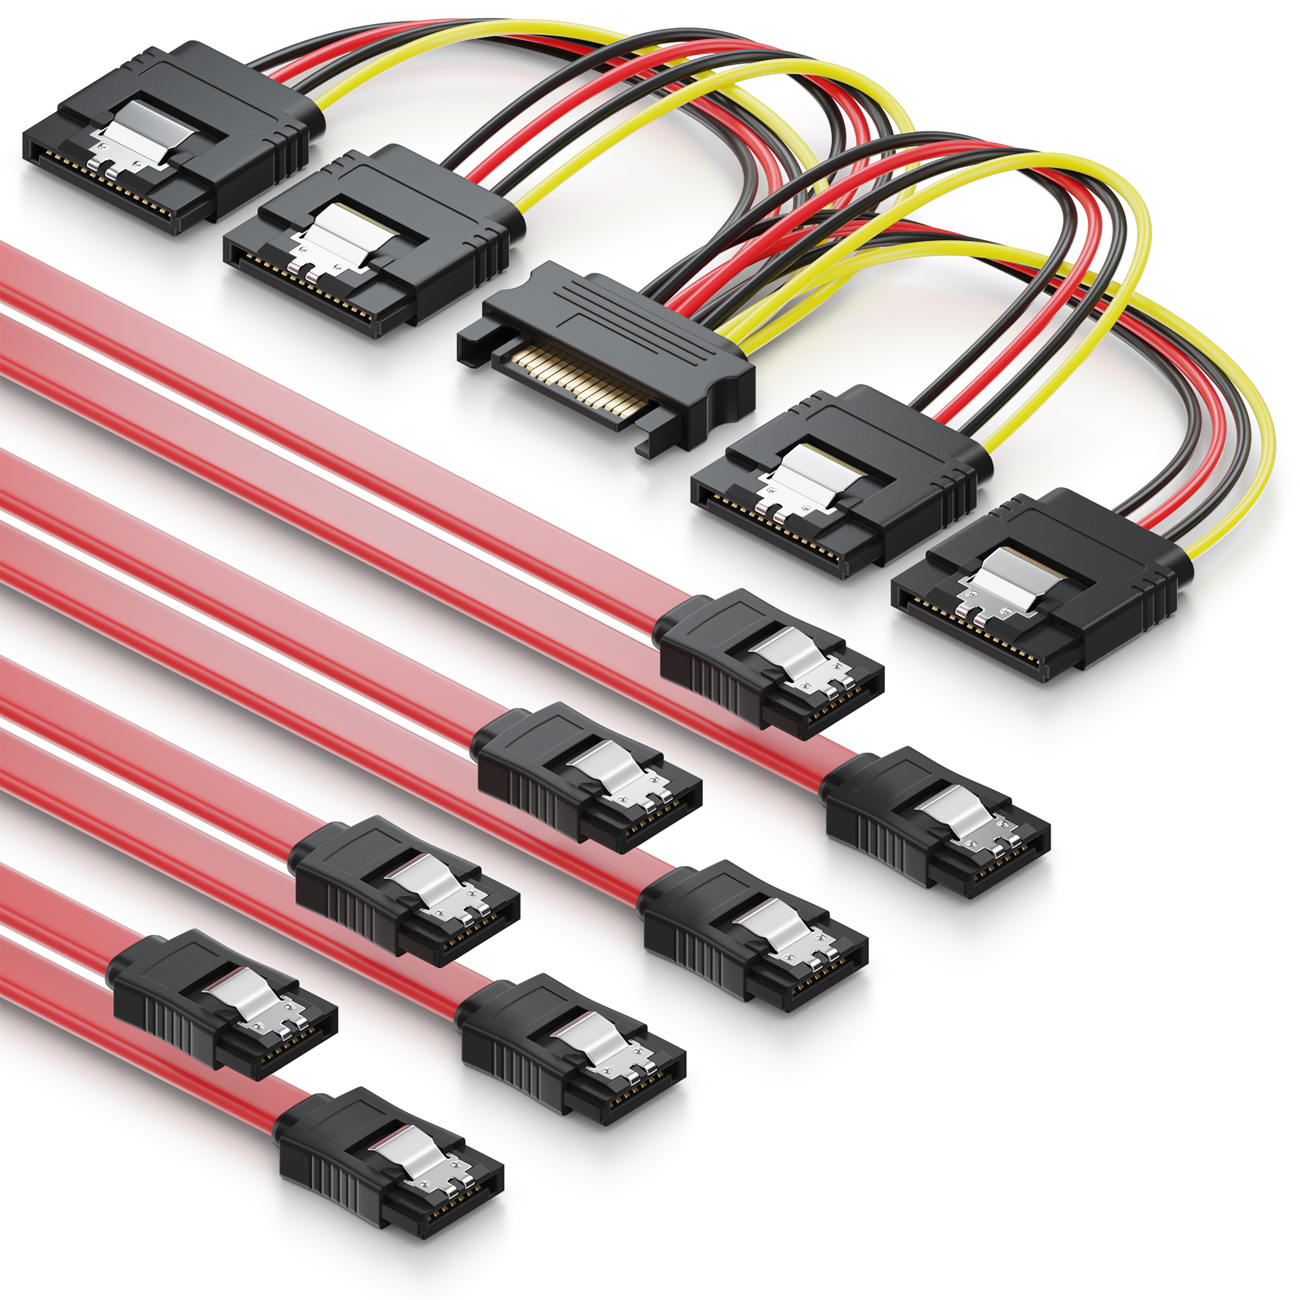 deleyCON SATA Kabel Set 4x SATA III Kabel mit Stecker gerade + Strom  Adapter Kabel - SSD HDD Festplatte - deleyCON